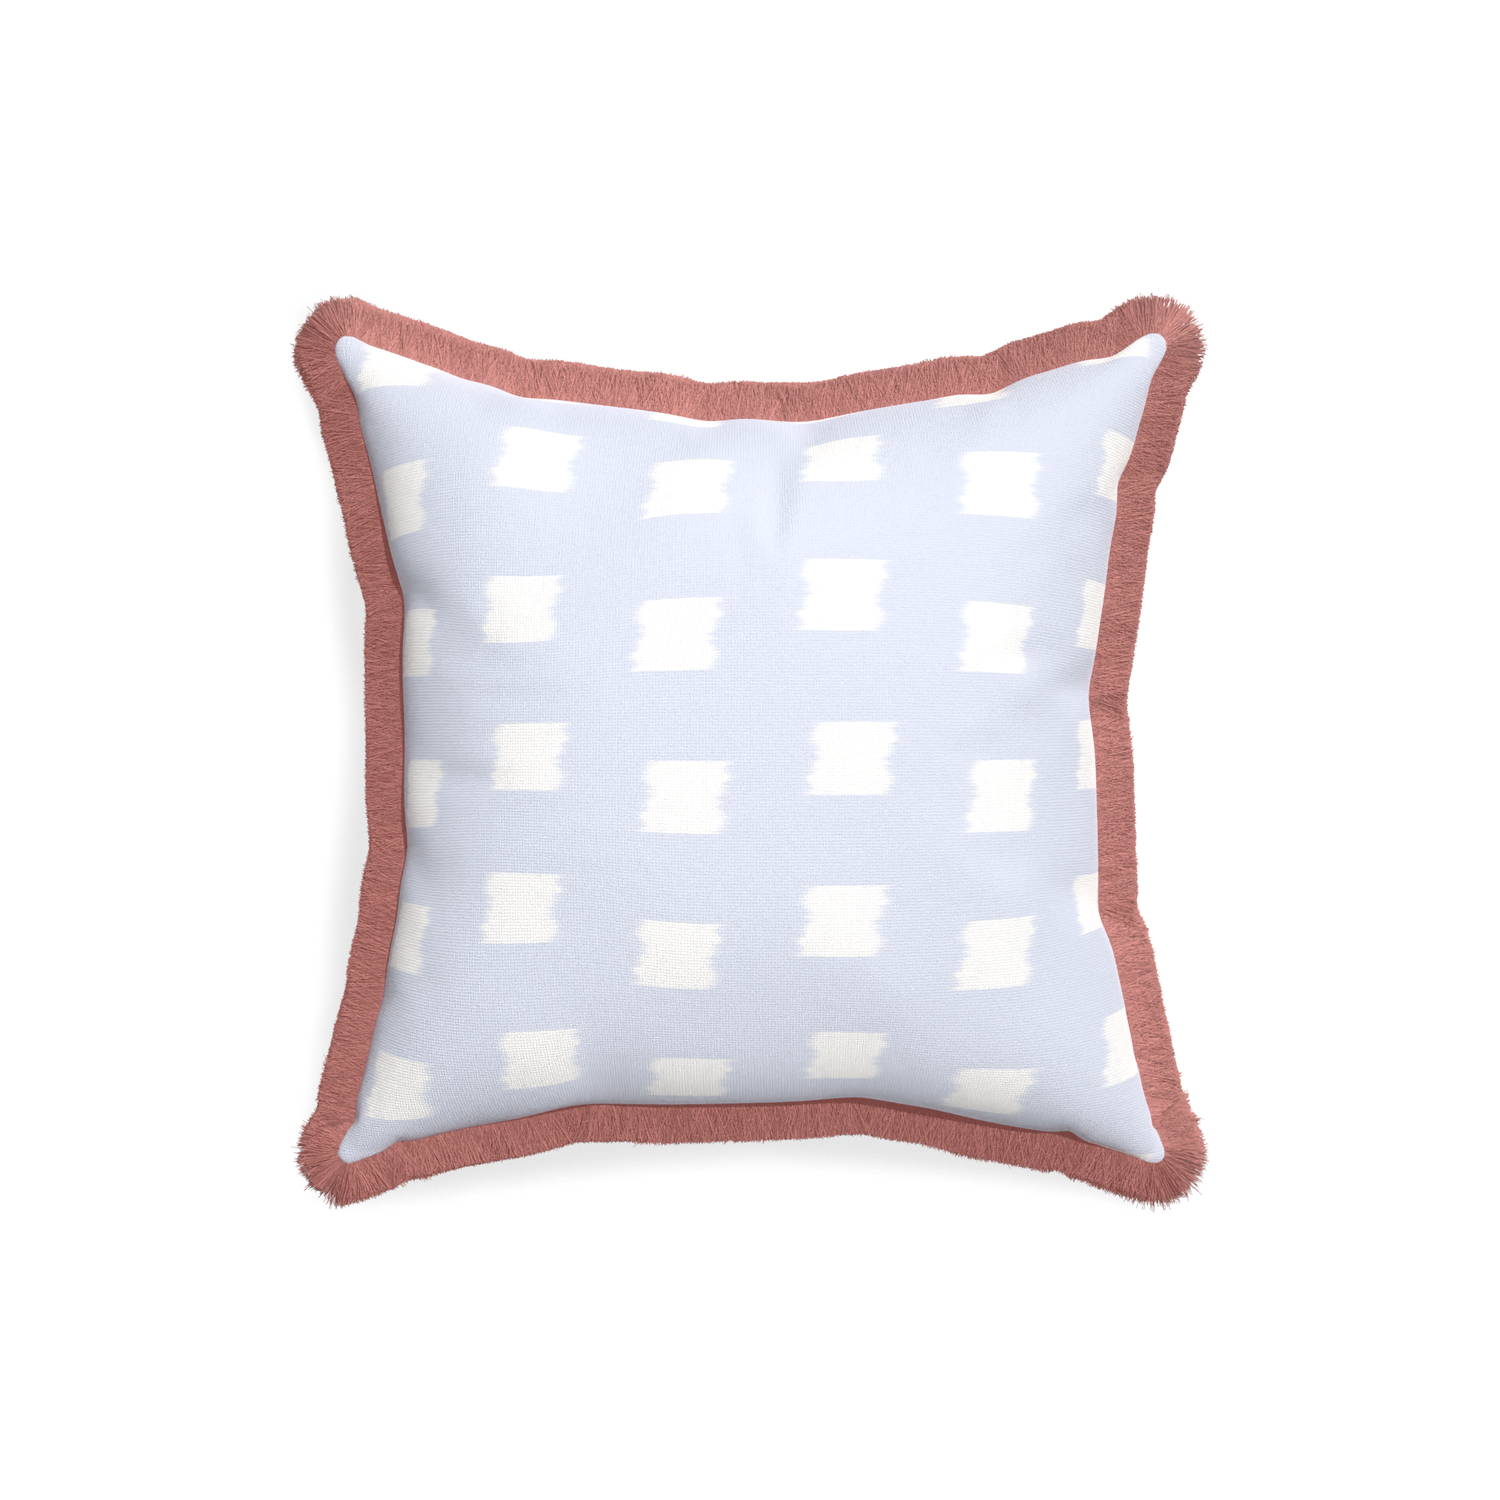 18-square denton custom pillow with d fringe on white background